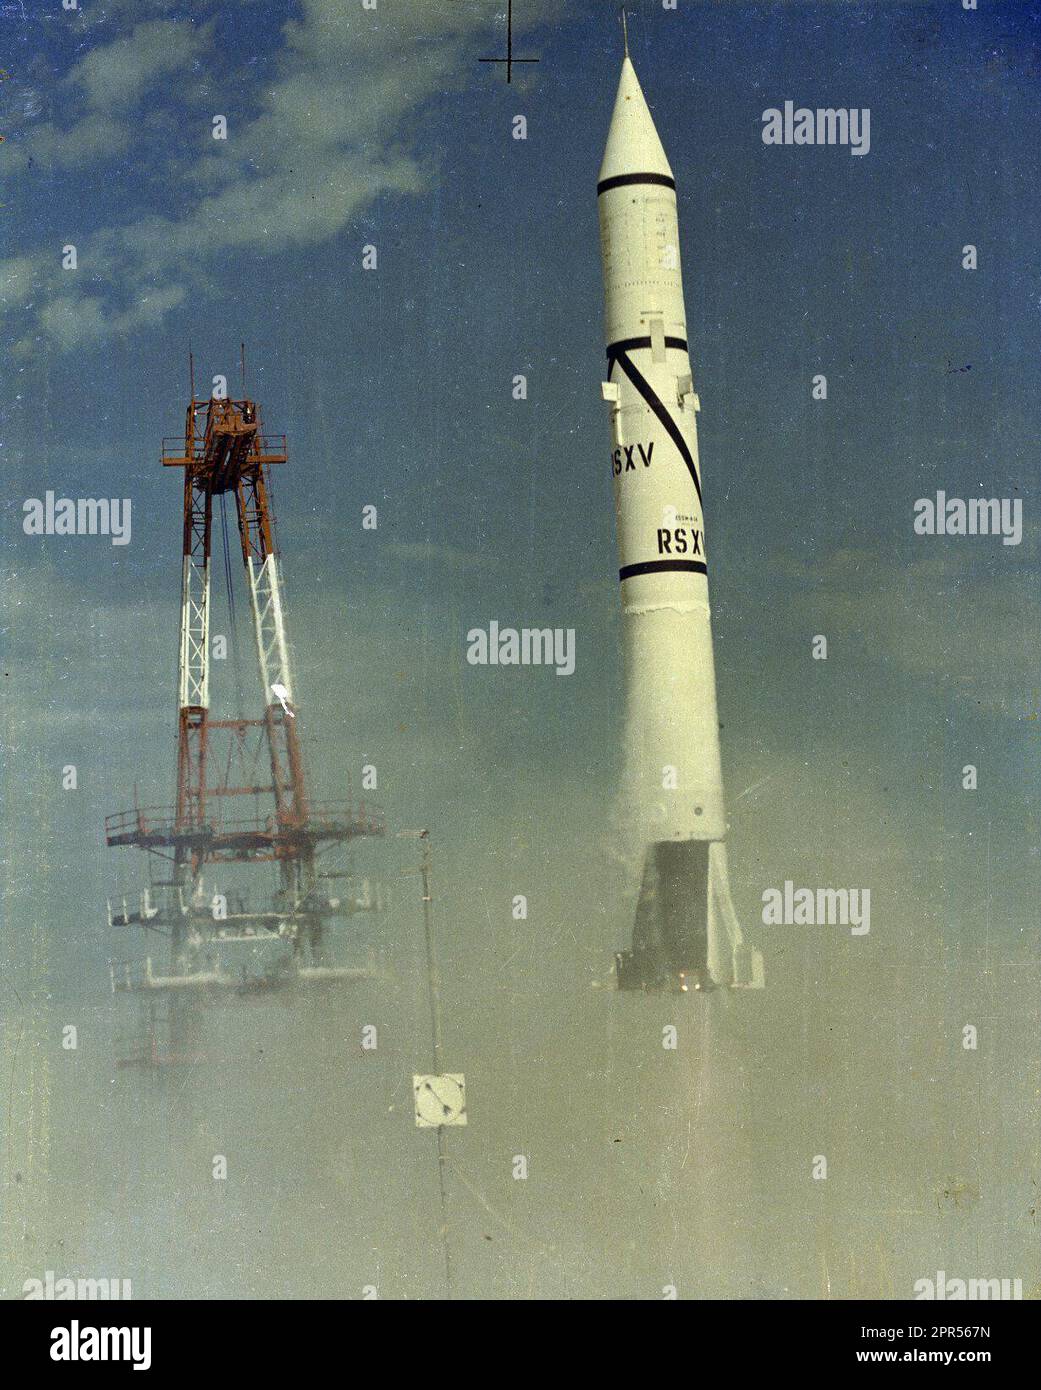 Die erste Redstone-Rakete wurde am 20. August 1953 in Cape Canaveral, Florida, gestartet. Redstone war das erste große Raketenentwicklungsprogramm der Peenemünder-Gruppe unter der Leitung von Dr. Wernher von Braun Stockfoto